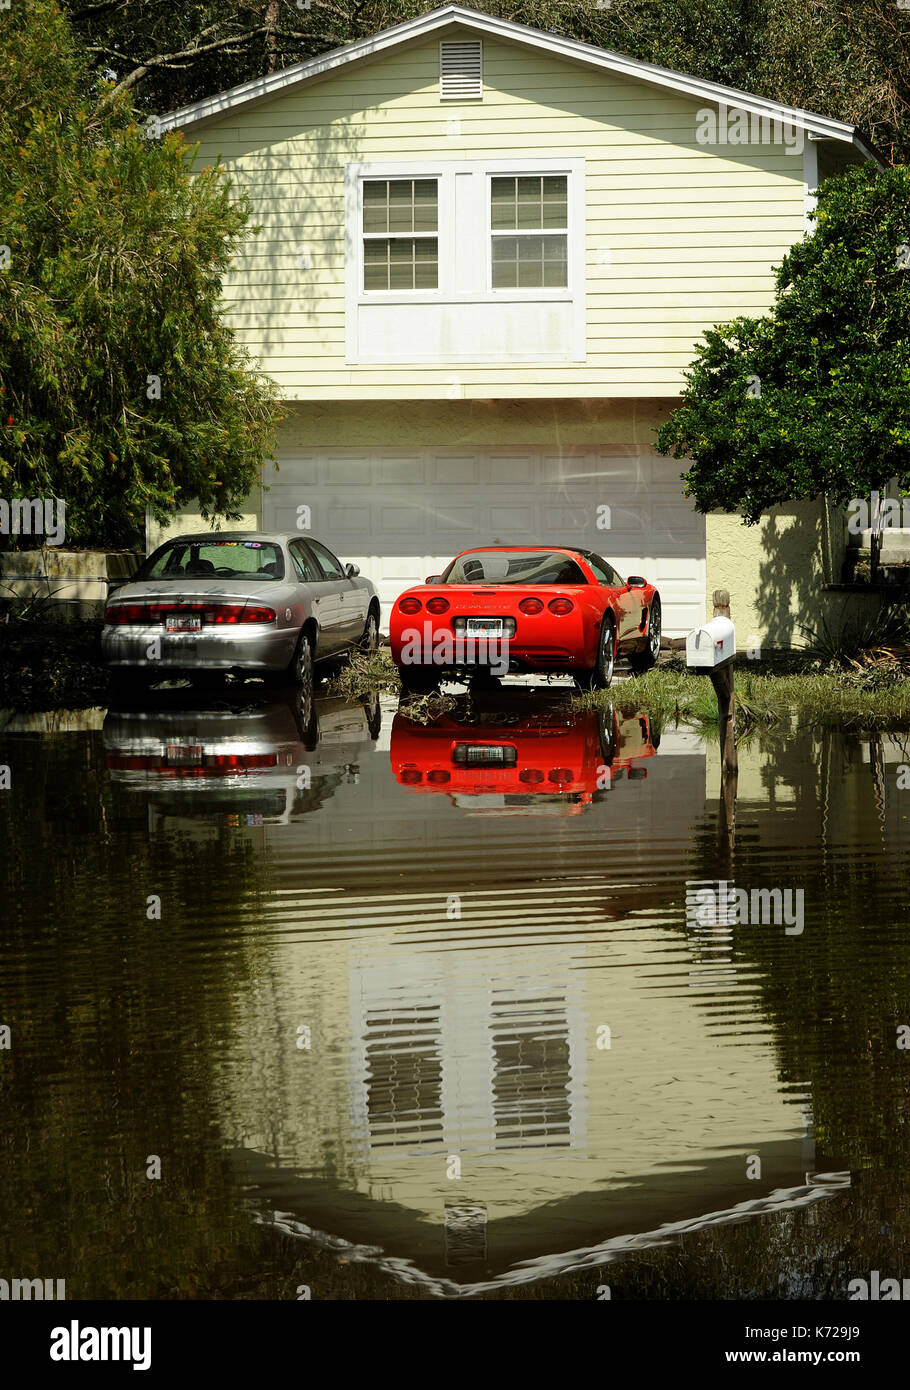 Altamonte Springs, États-Unis. Sep 14, 2017 14 septembre, 2017.- d'Altamonte Springs, Florida, United States - une maison et voitures sont vue reflétée dans les eaux de crue dans la rue dans le quartier des chênes de printemps d'Altamonte Springs, en Floride le 14 septembre 2017. Les travailleurs d'urgence neufs et les camions de sauver plus de 50 résidents, le 11 septembre 2017, lorsque l'eau de la petite rivière à proximité wekiva inondé leurs foyers à la suite de l'ouragan irma. crédit : Paul Hennessy/Alamy live news Banque D'Images